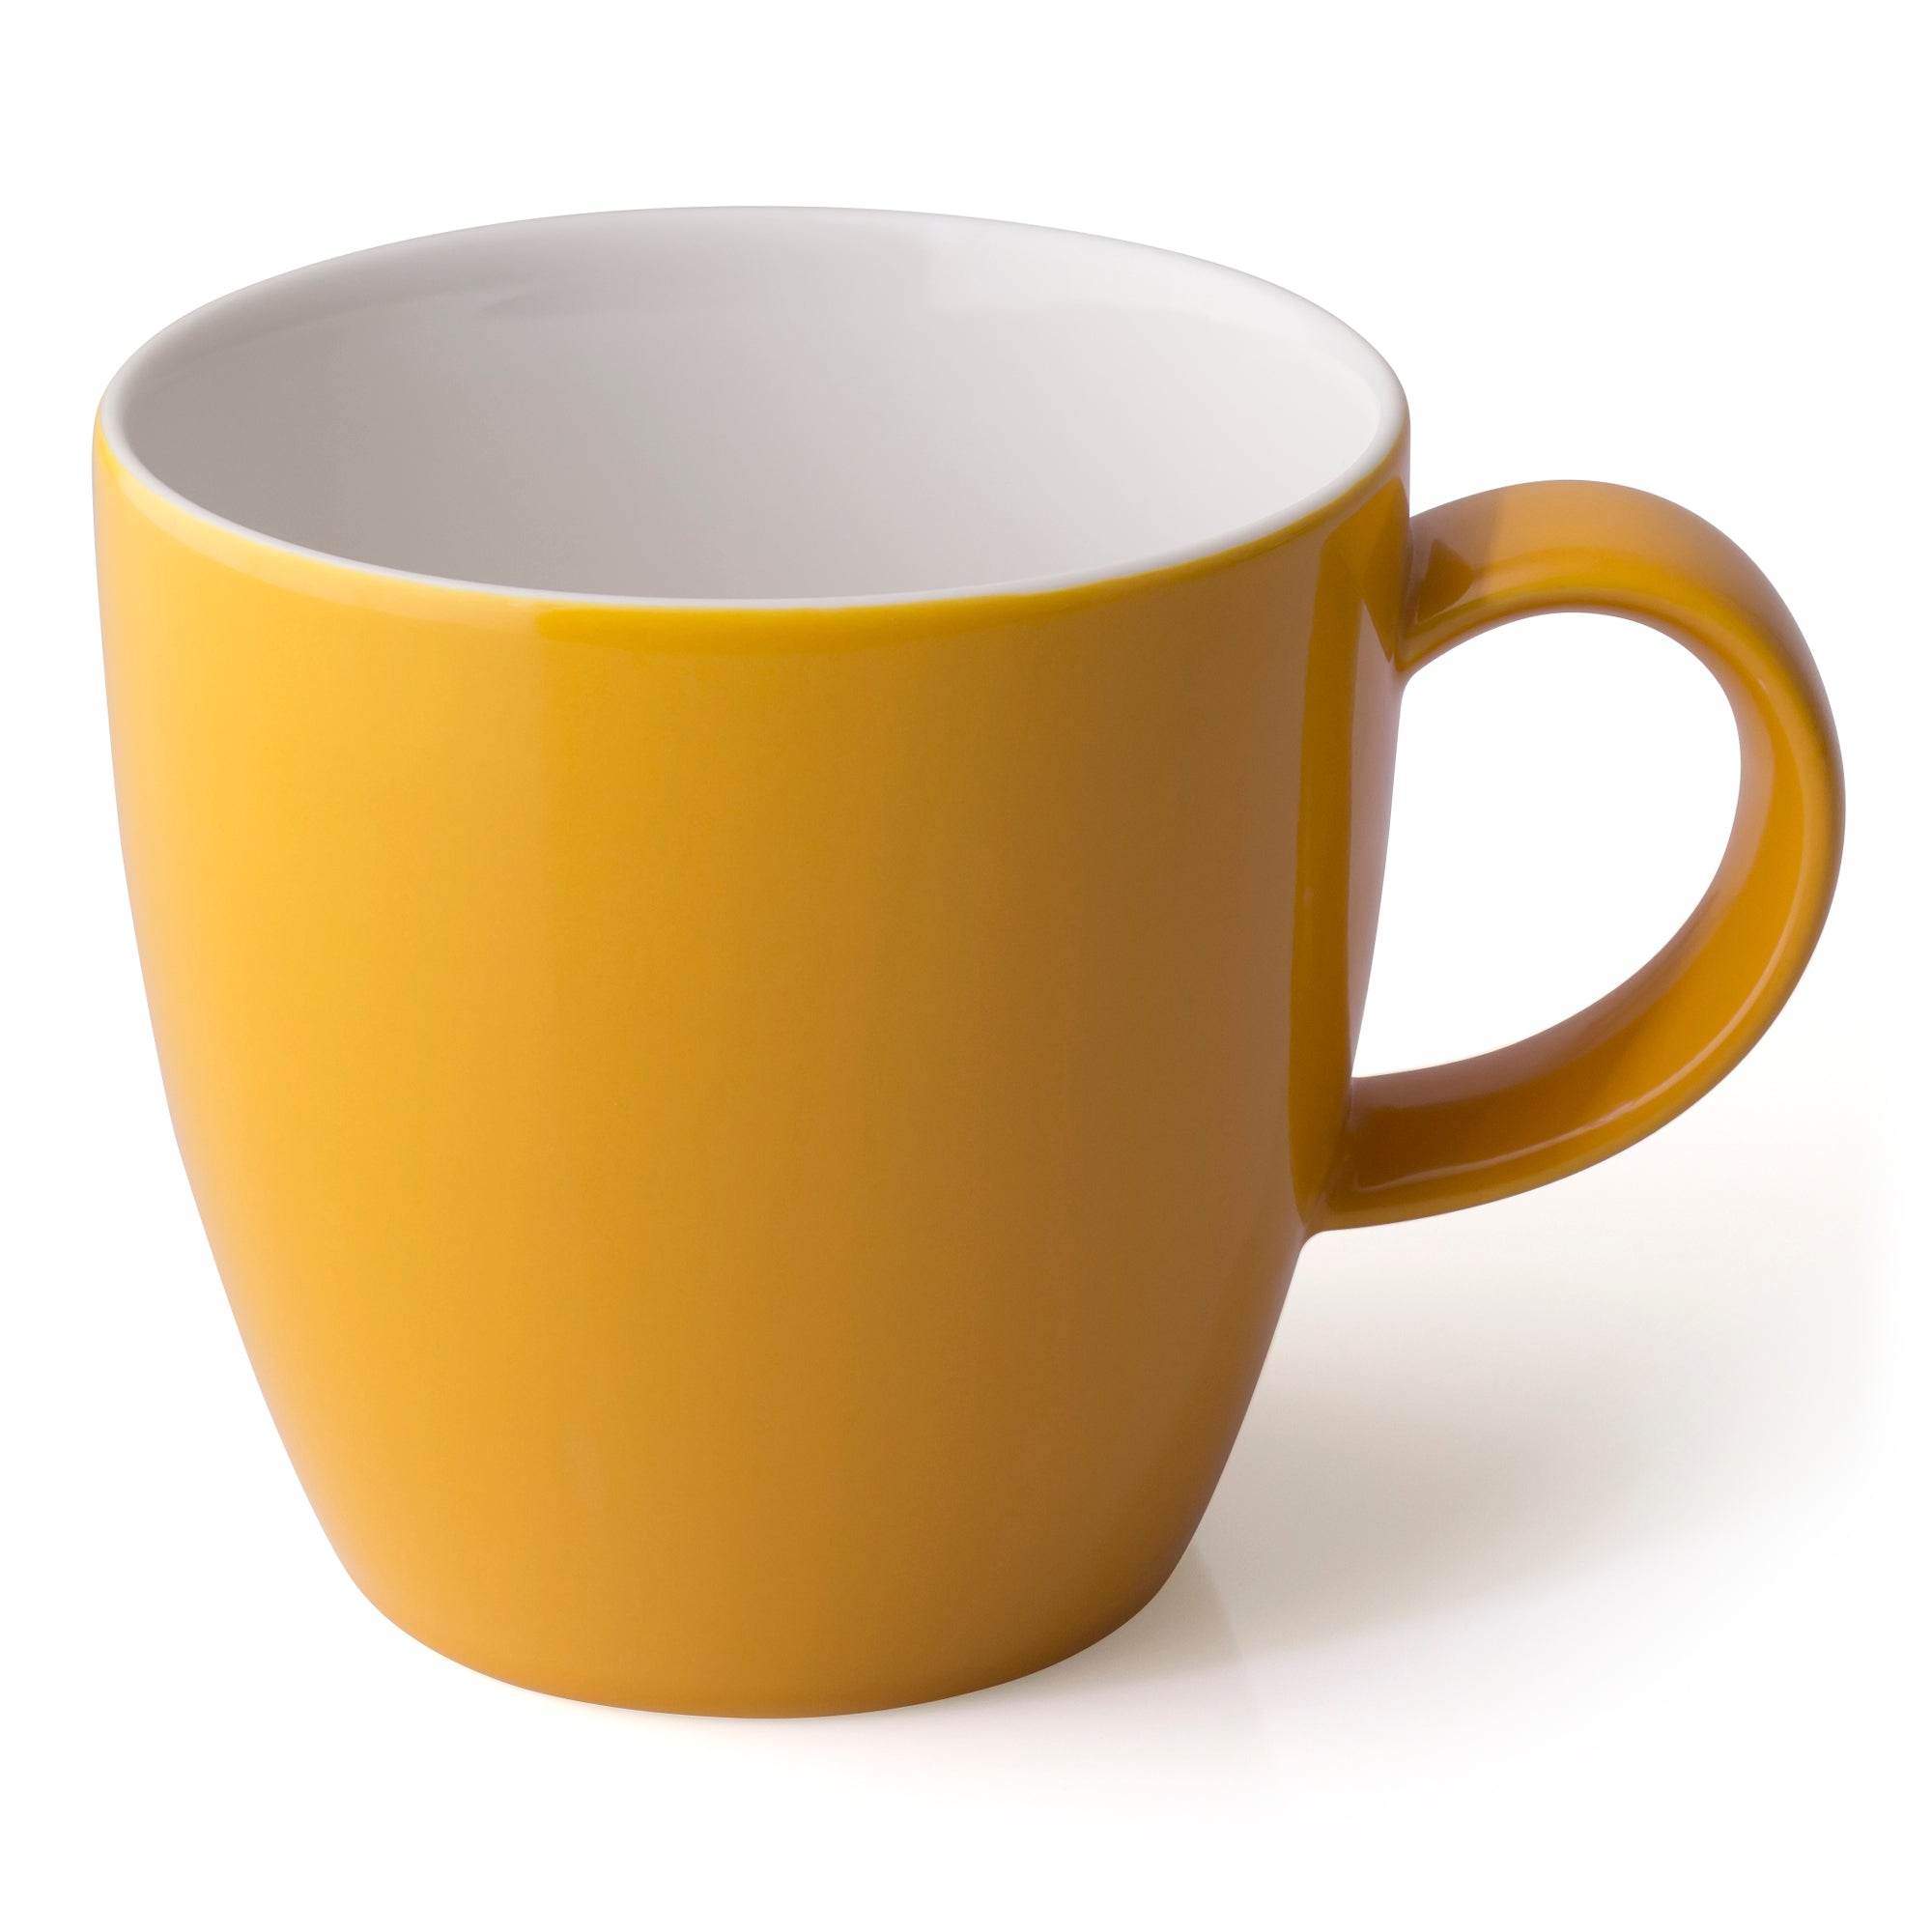  Tazas de té de café con soporte y bandeja dorados